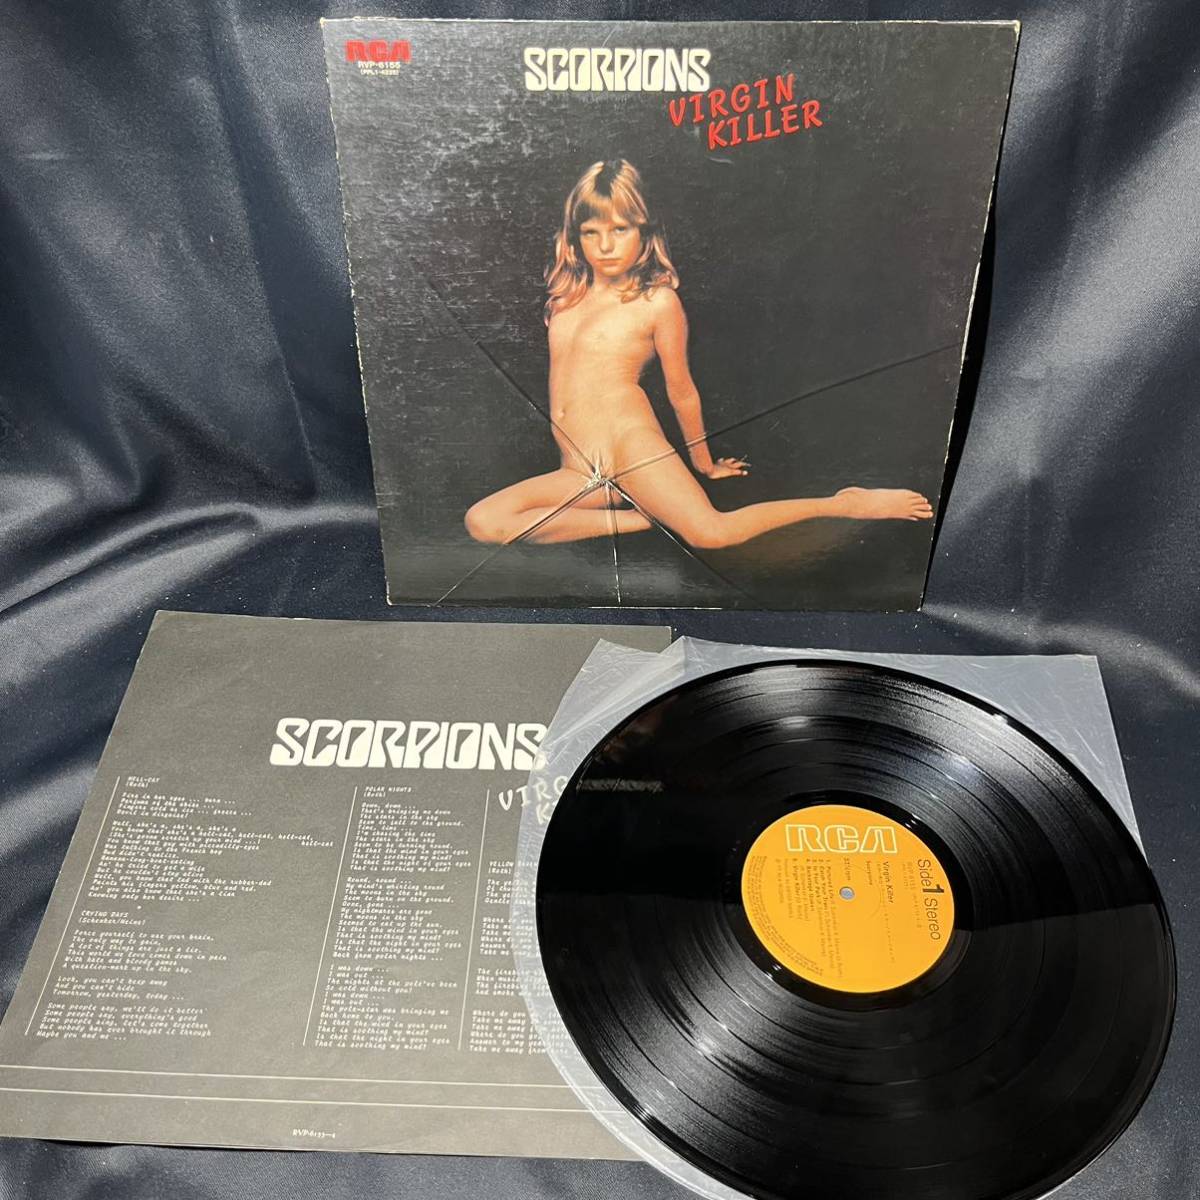 Scorpions スコーピオンズ 【virgin killerヴァージン キラー 】レコード LP_画像4